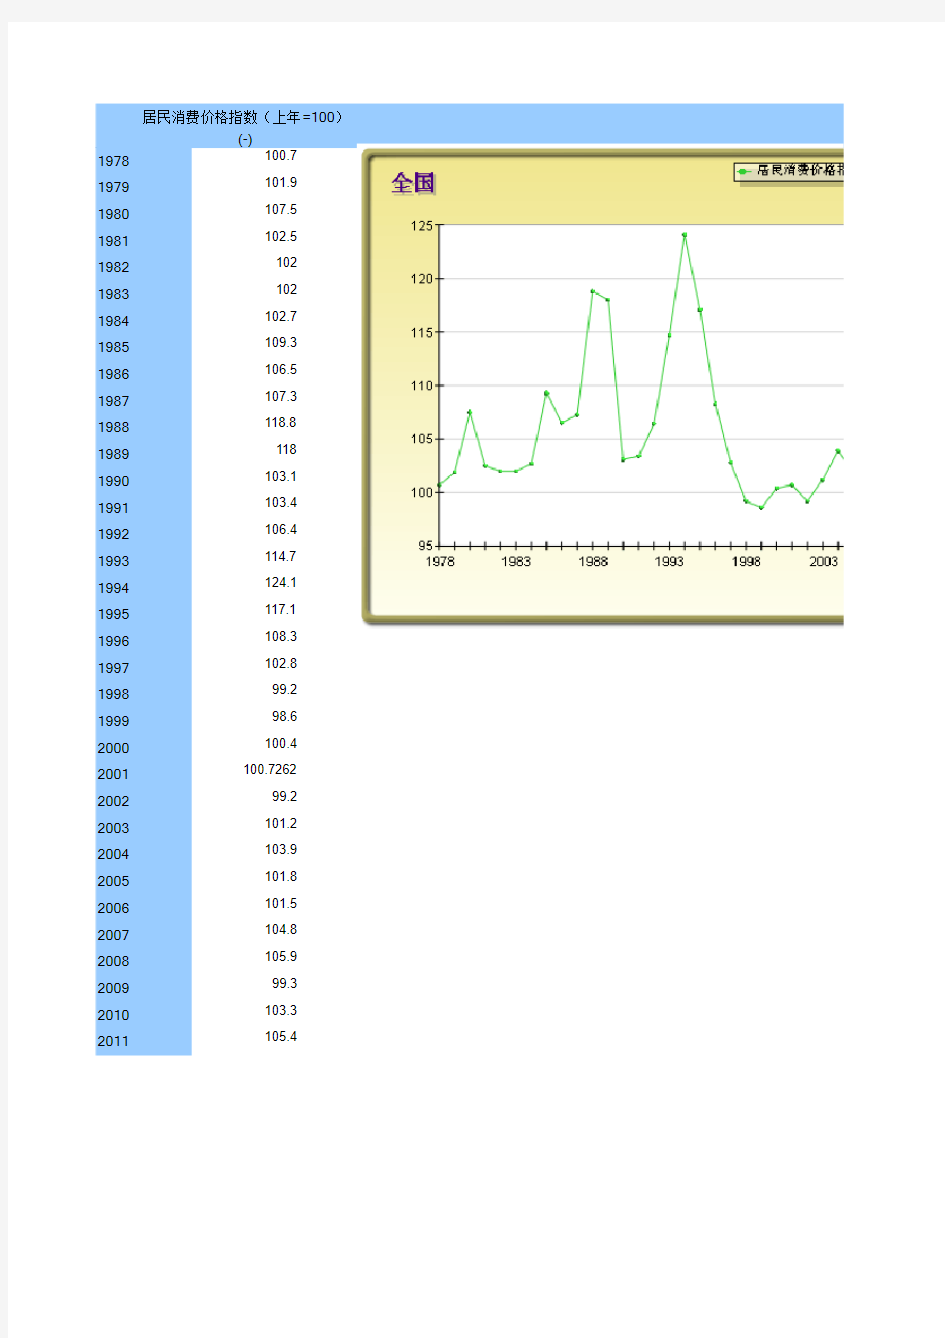 居民消费价格CPI(1978-2011)指数